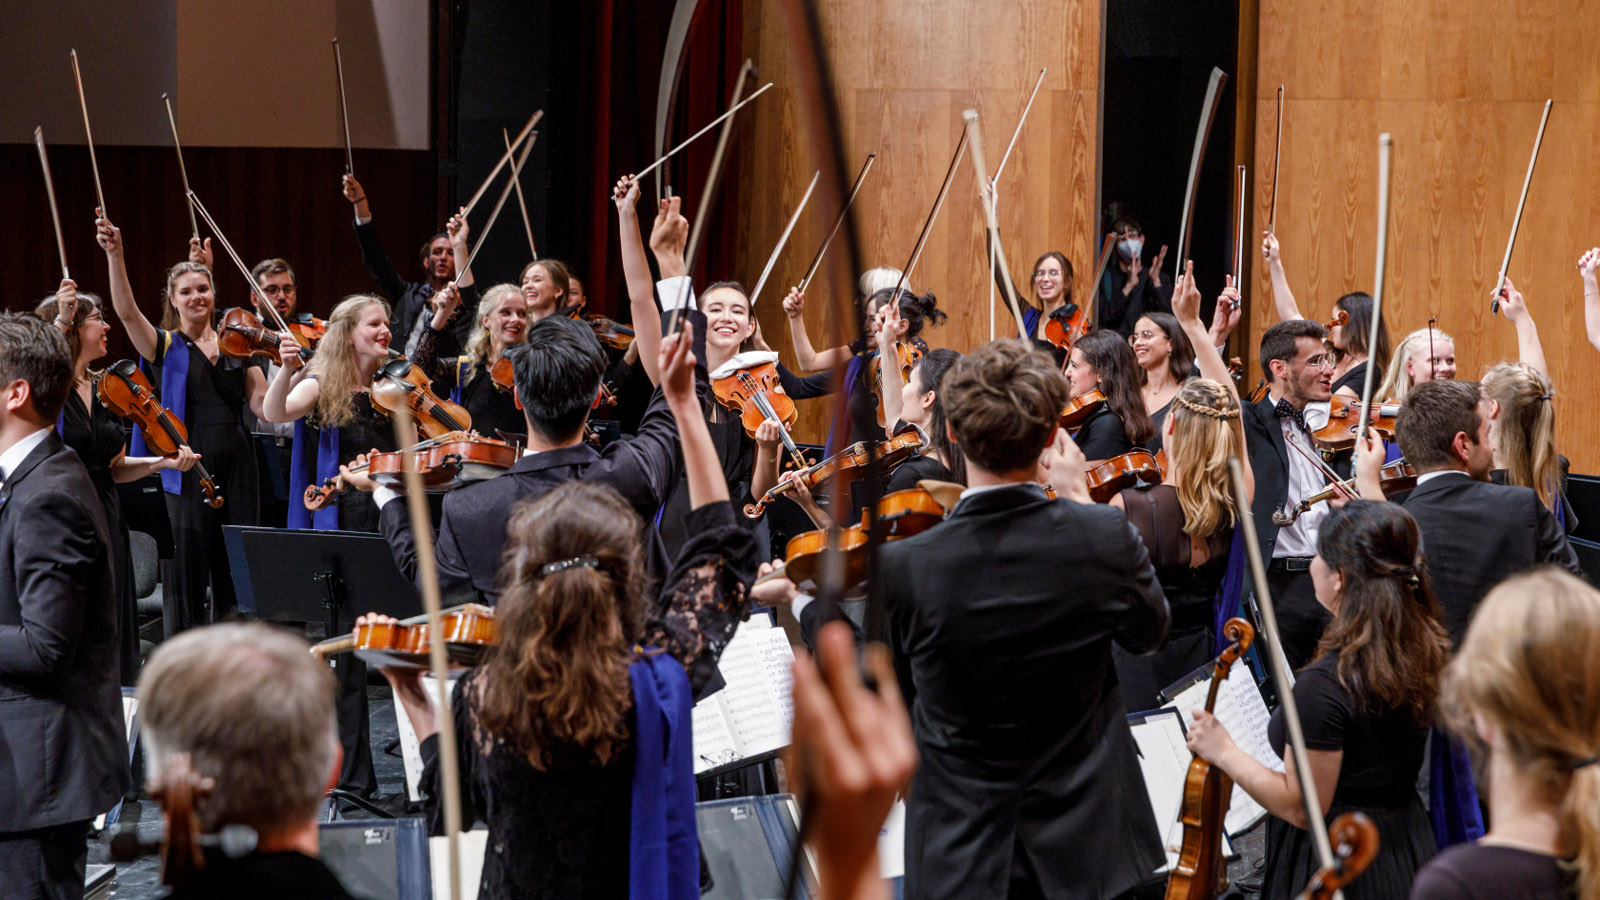 Kuvassa Euroopan nuoriso-orkesterin jäsenet ovat seisaallaan soittimet kädessään ympyrässä ryhmänä.